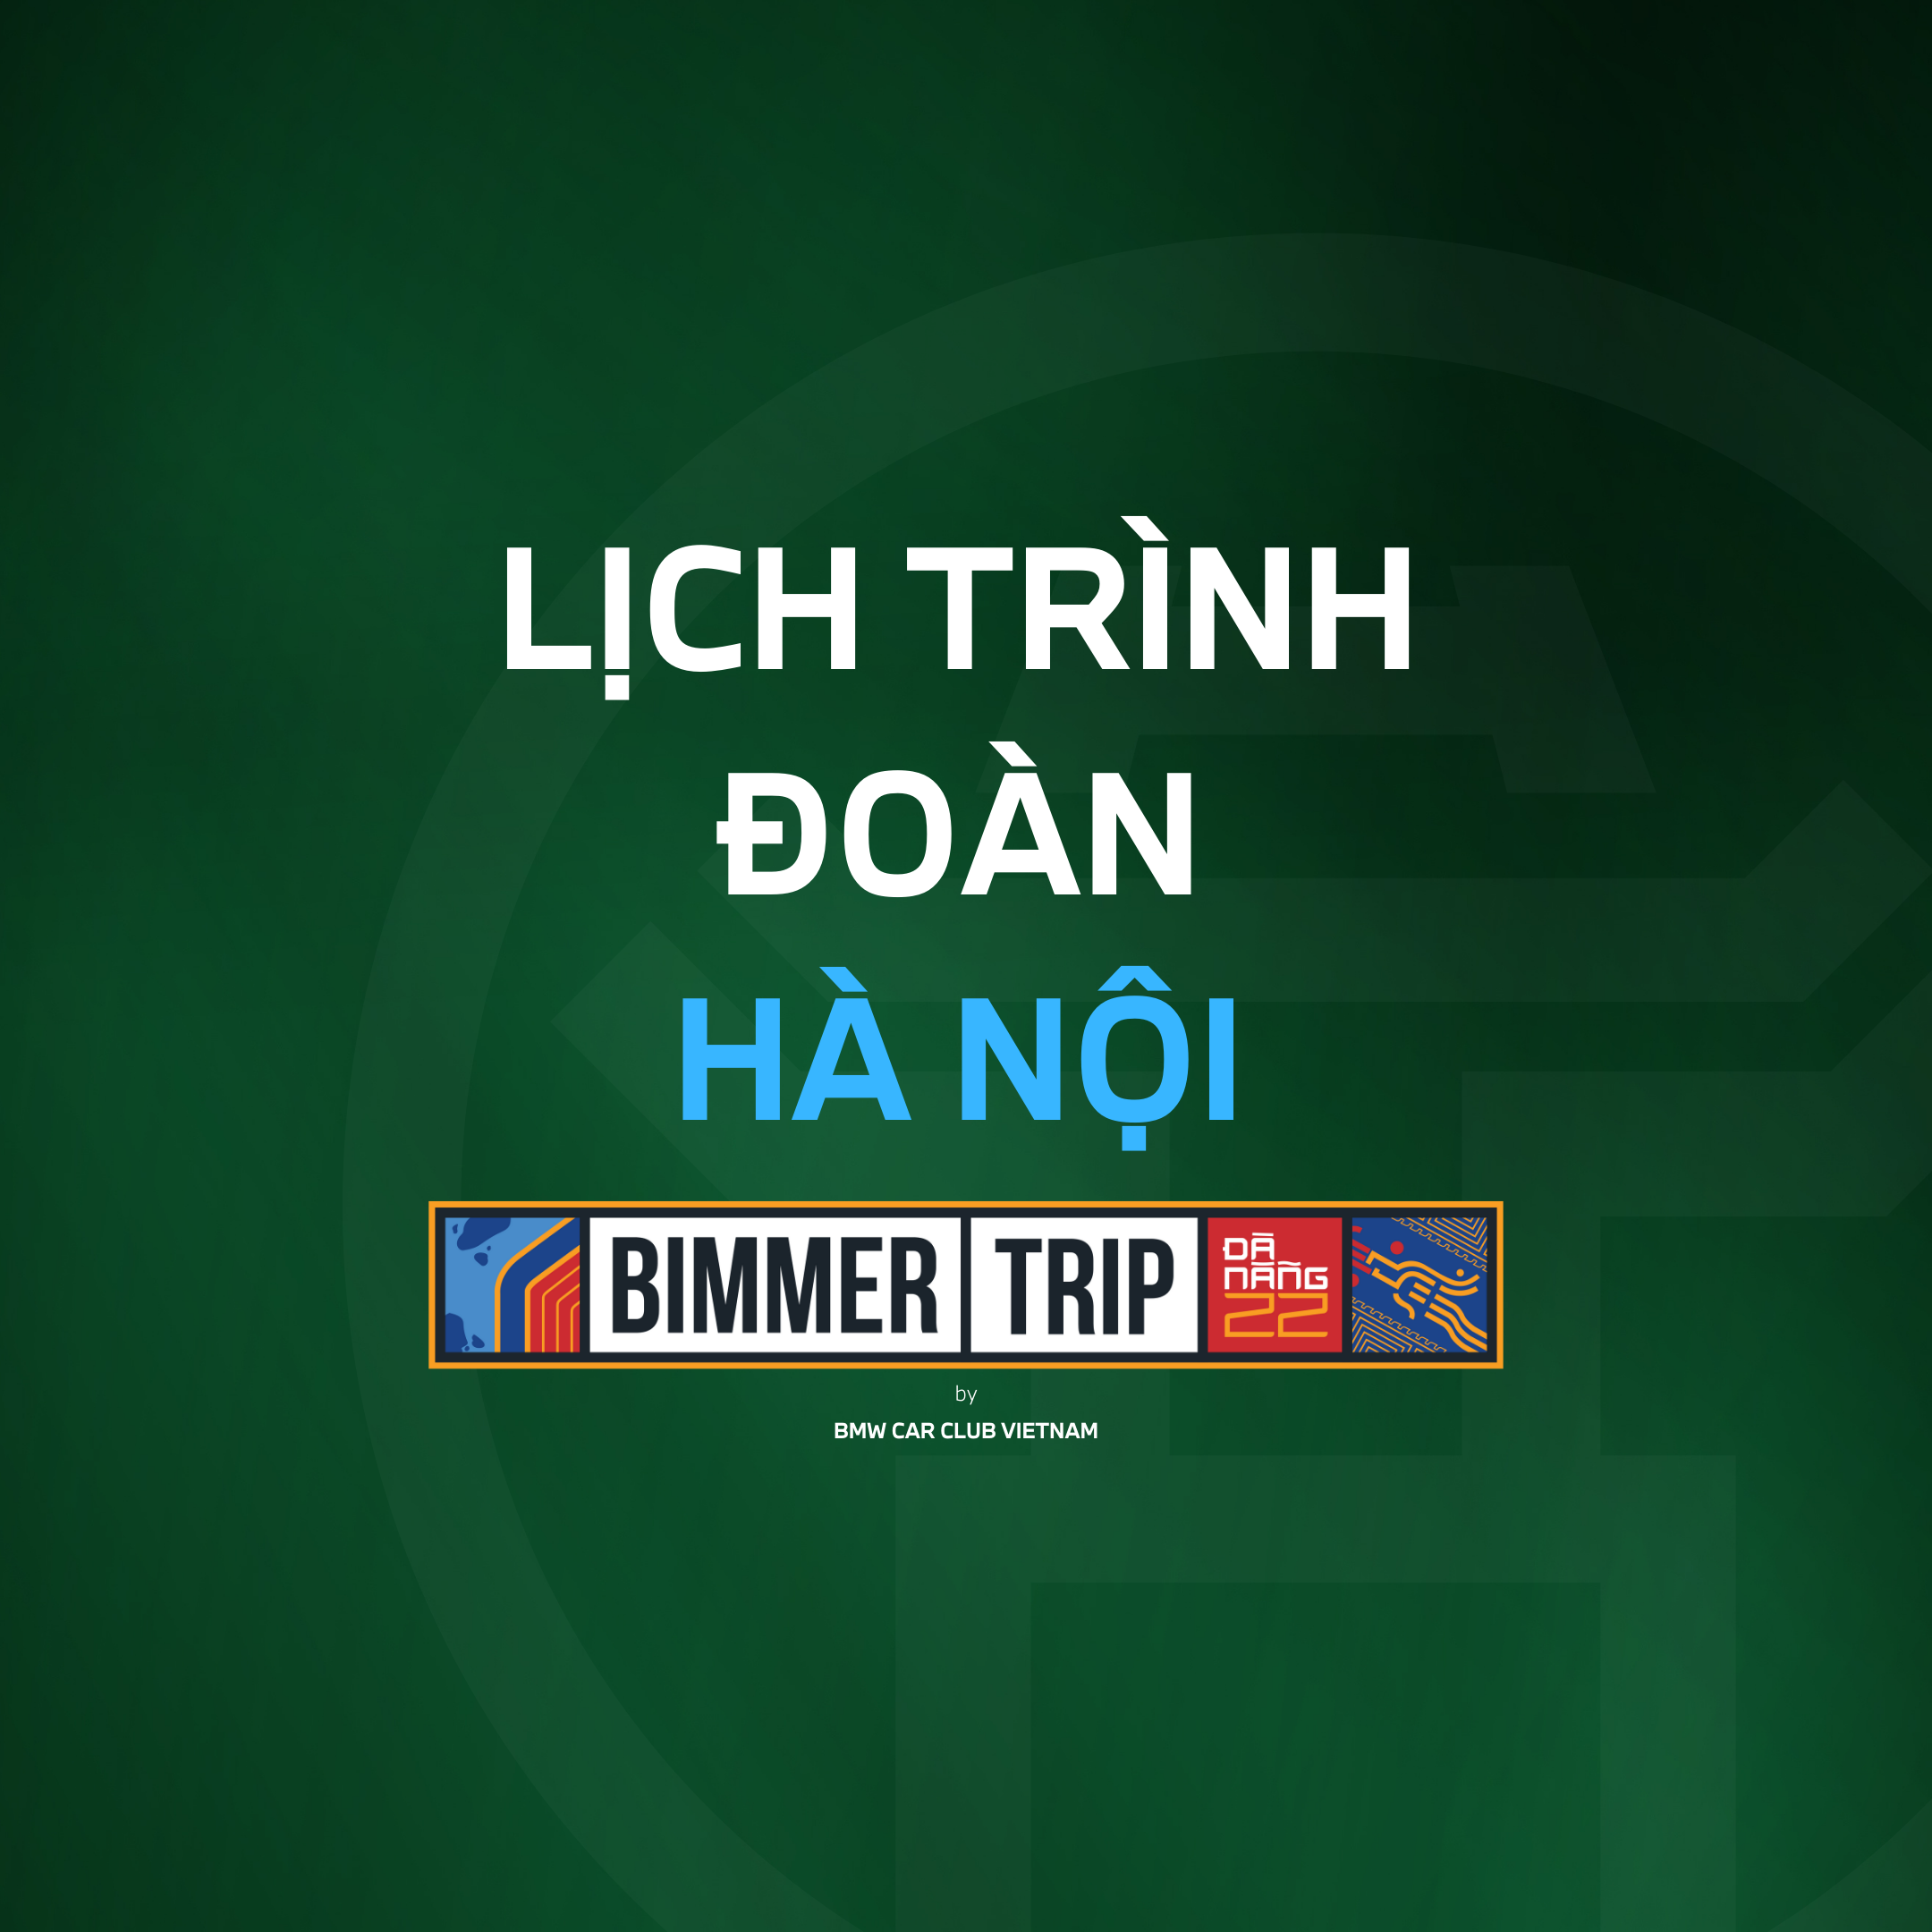 Lịch trình đoàn BIMMERTRIP xuất phát từ Hà Nội đến Đà Nẵng